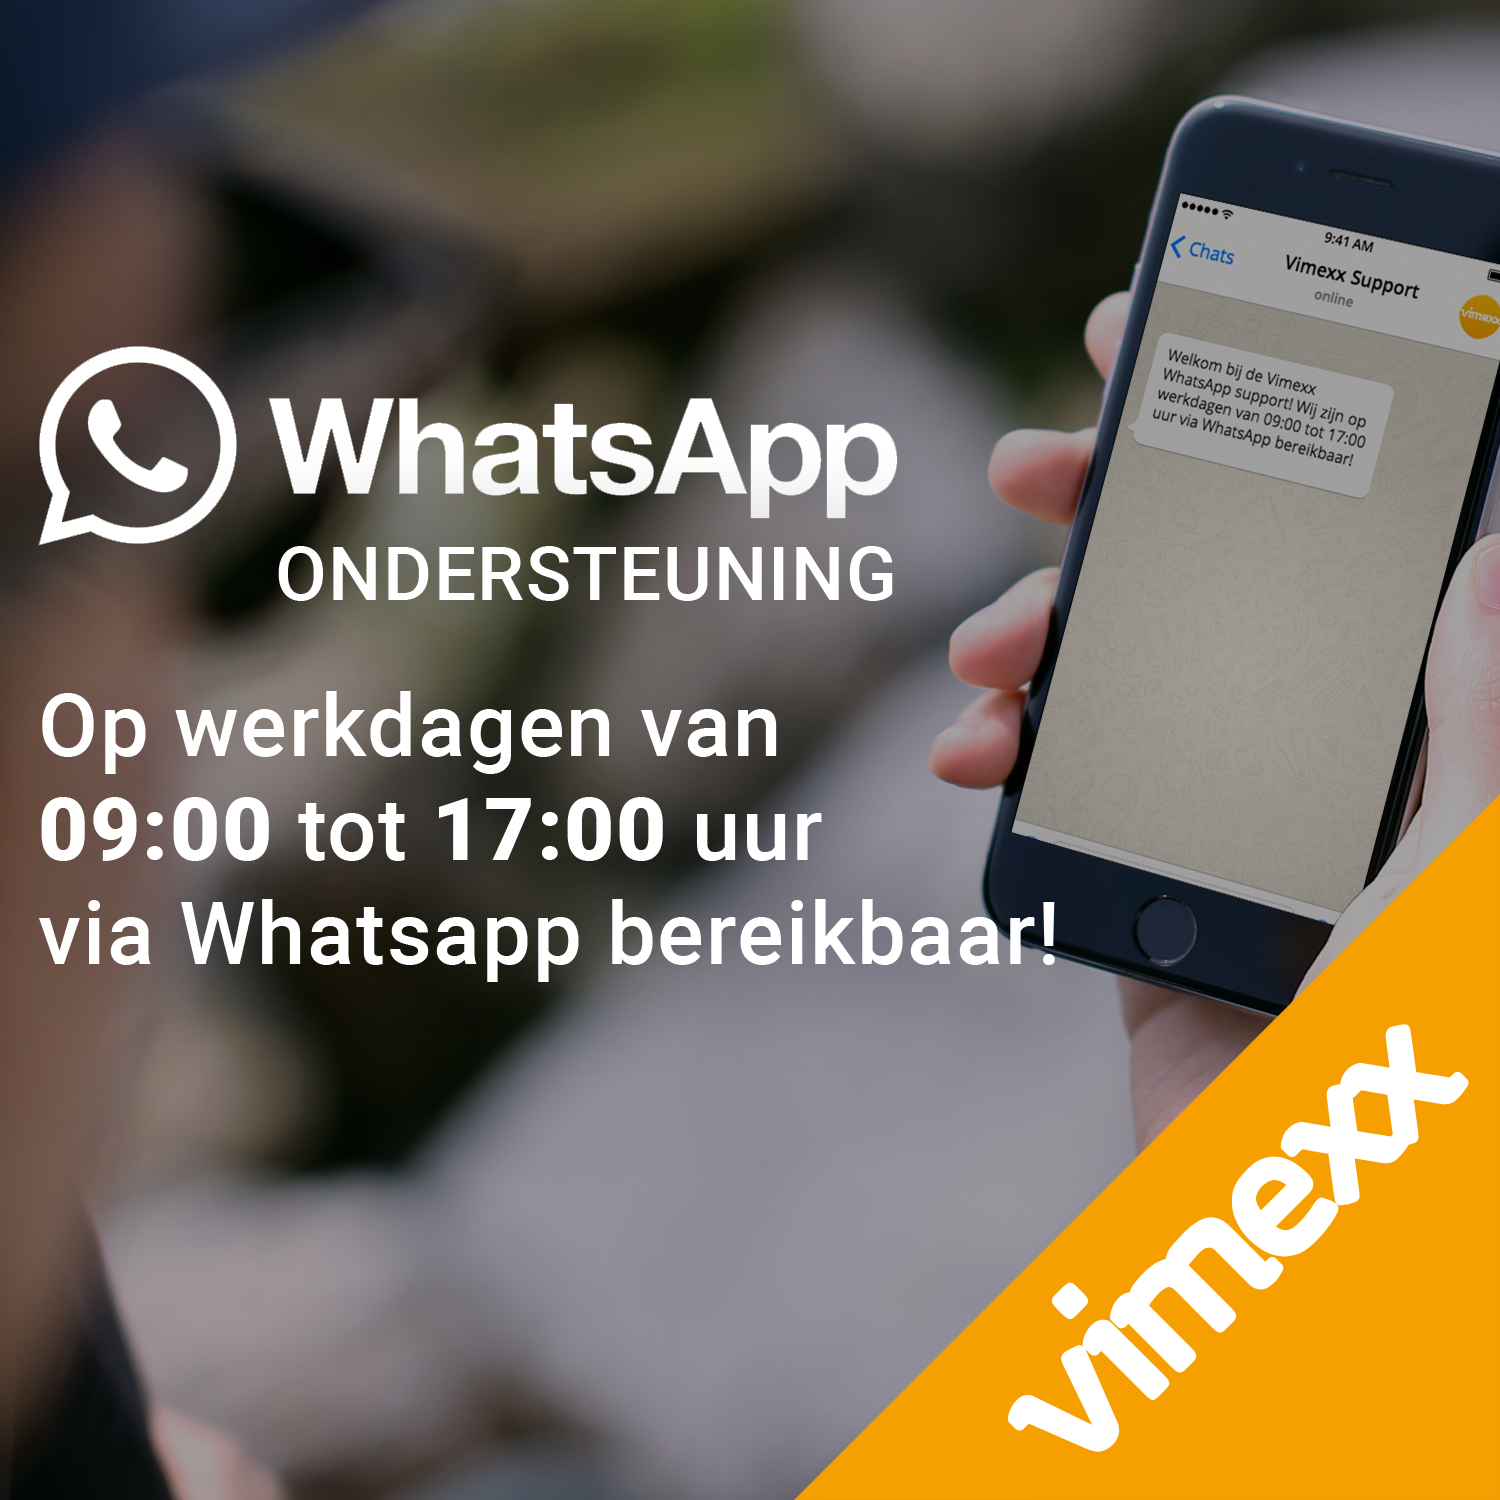 Whatsapp support Vimexx